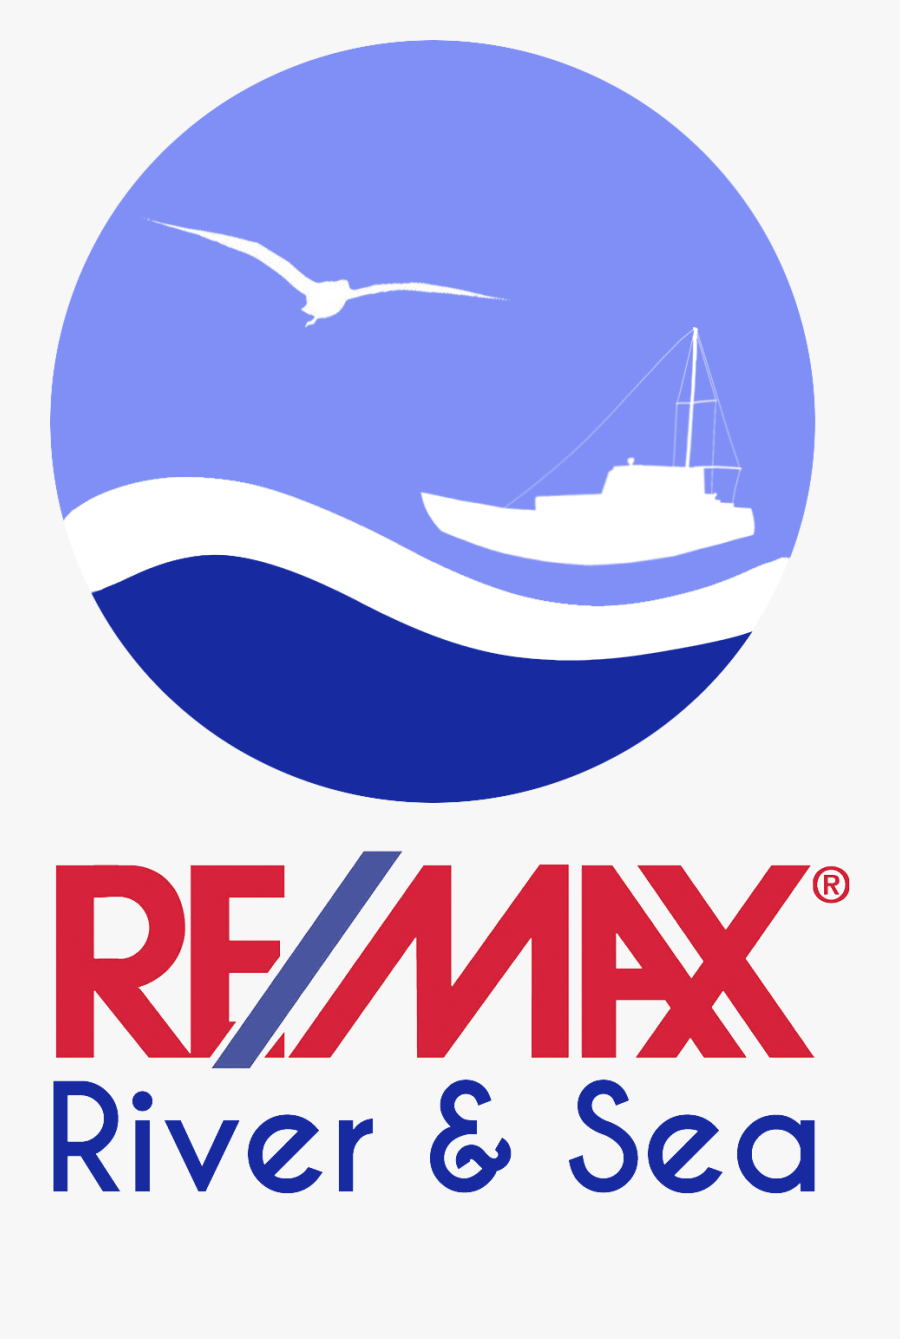 Re/max River & Sea - Remax, Transparent Clipart